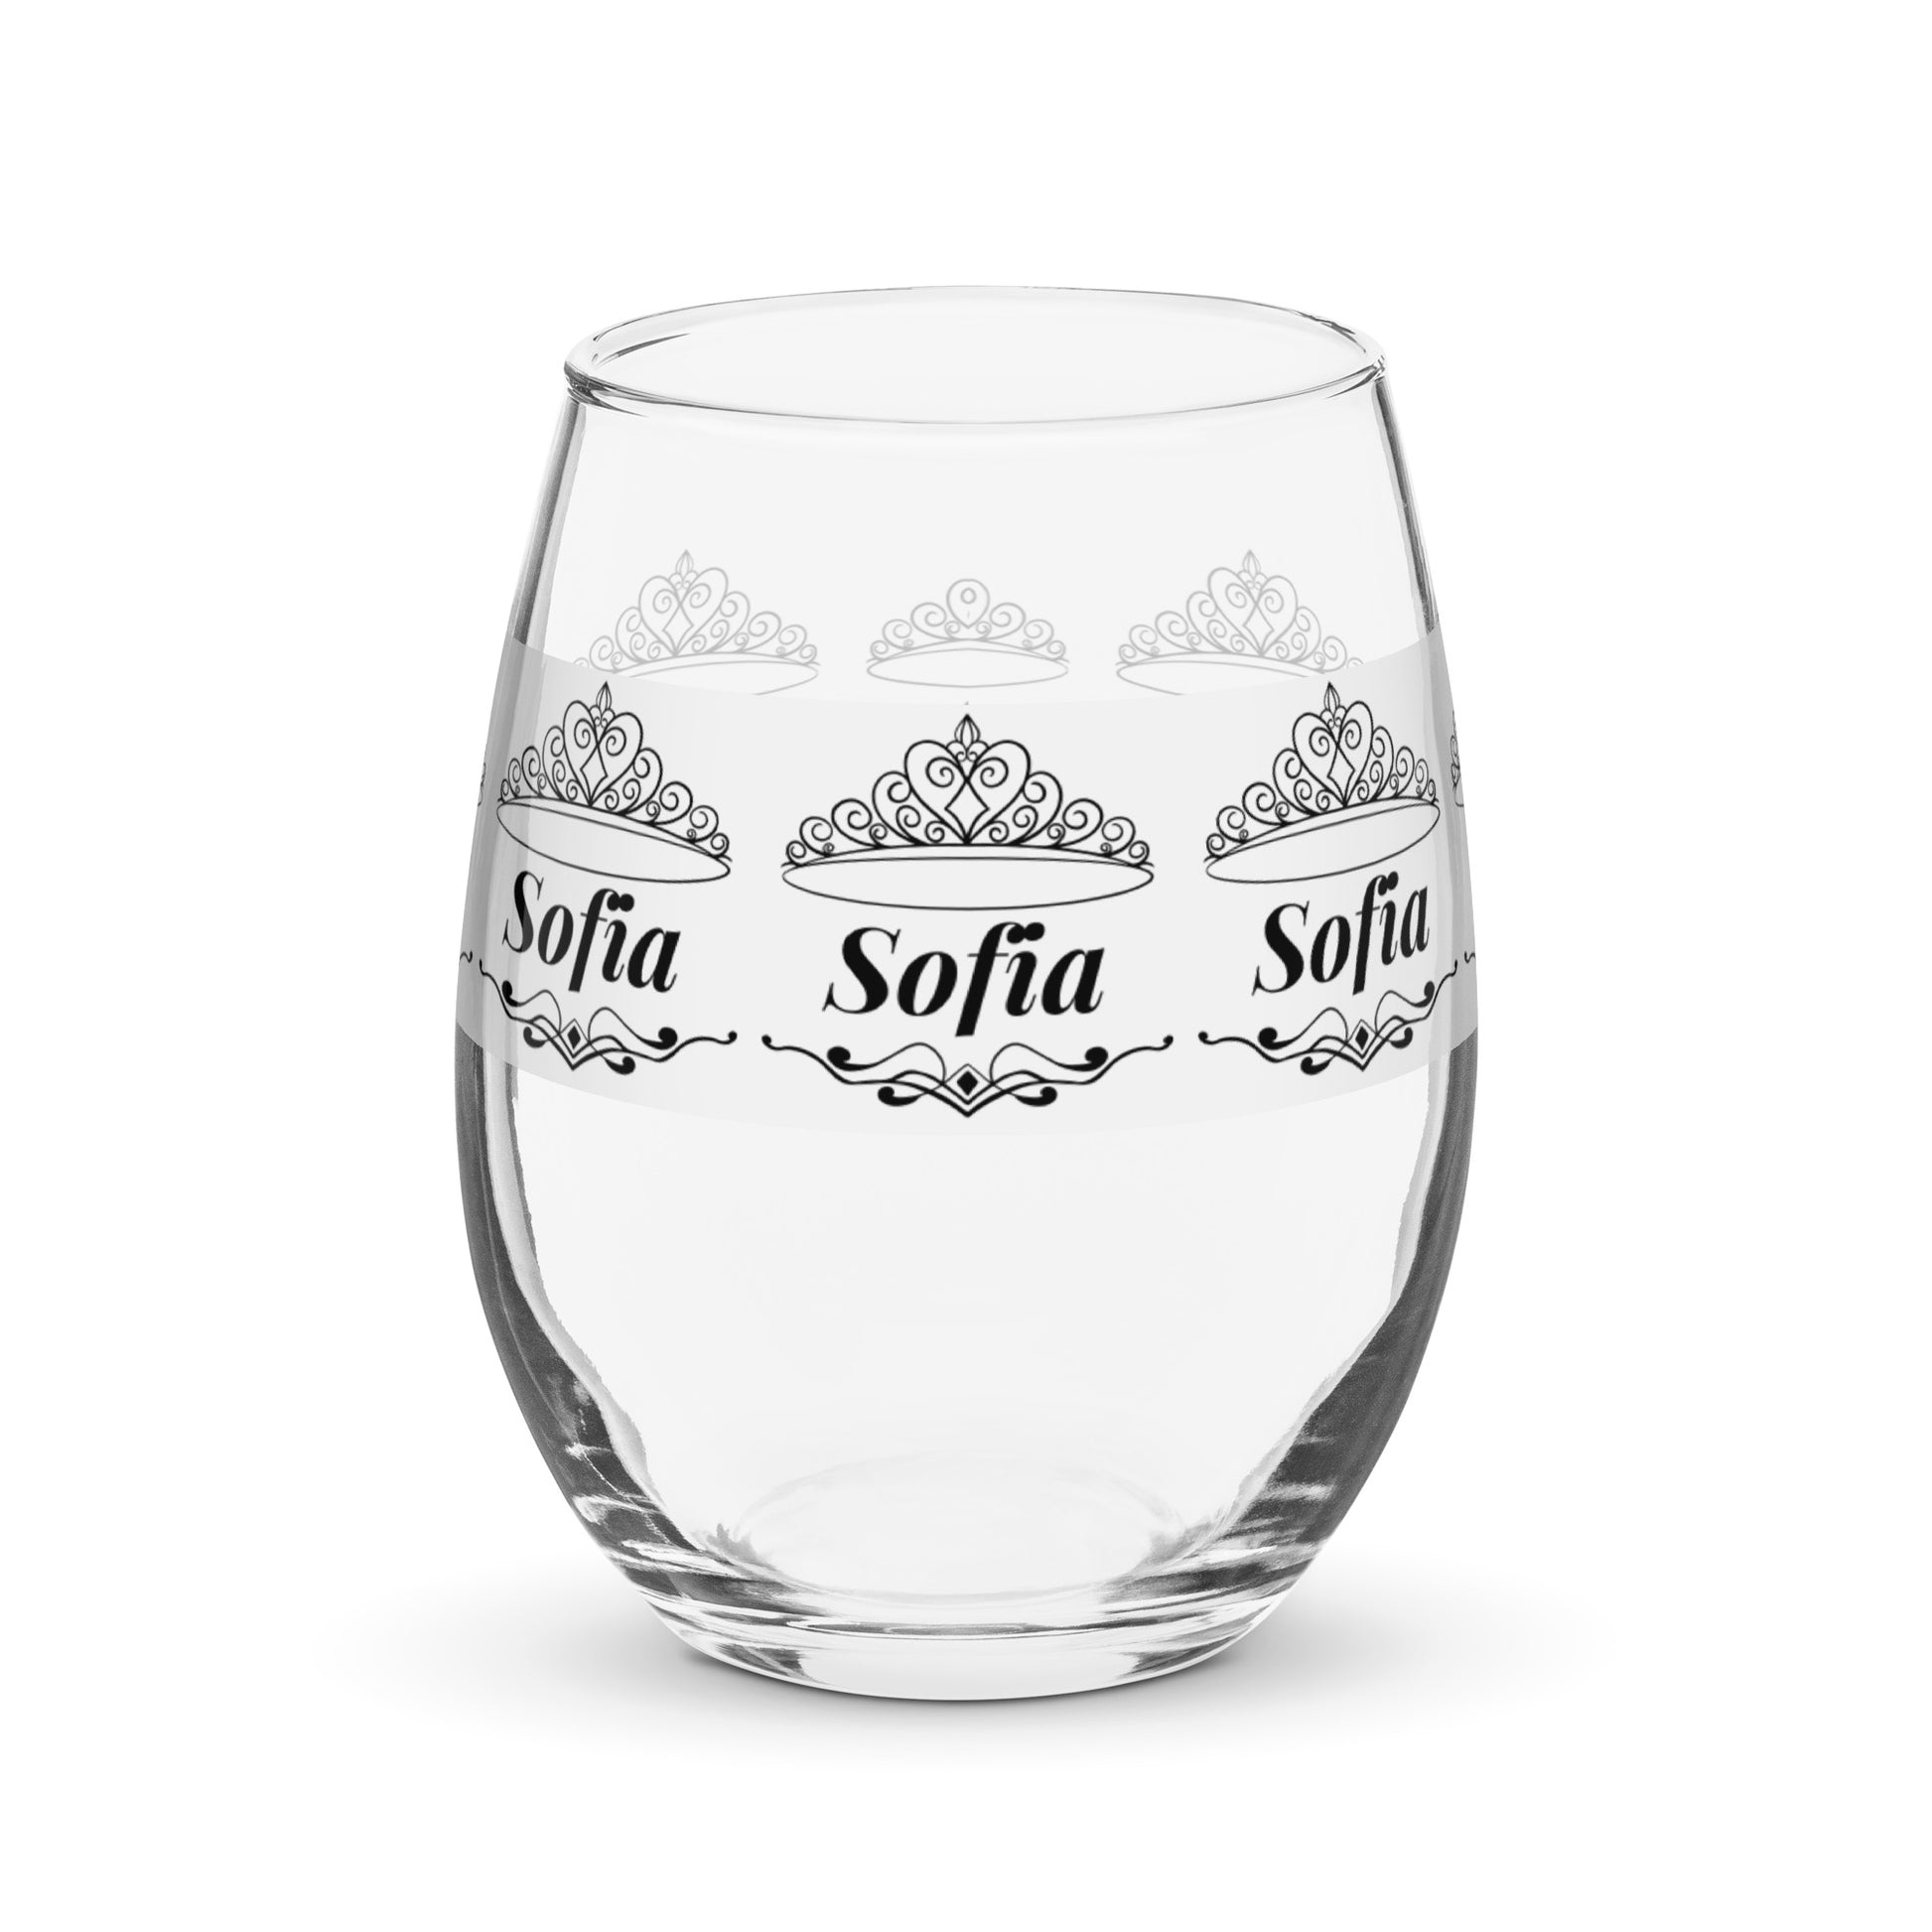 name wine glass personalized wine glass Sofia wine glass